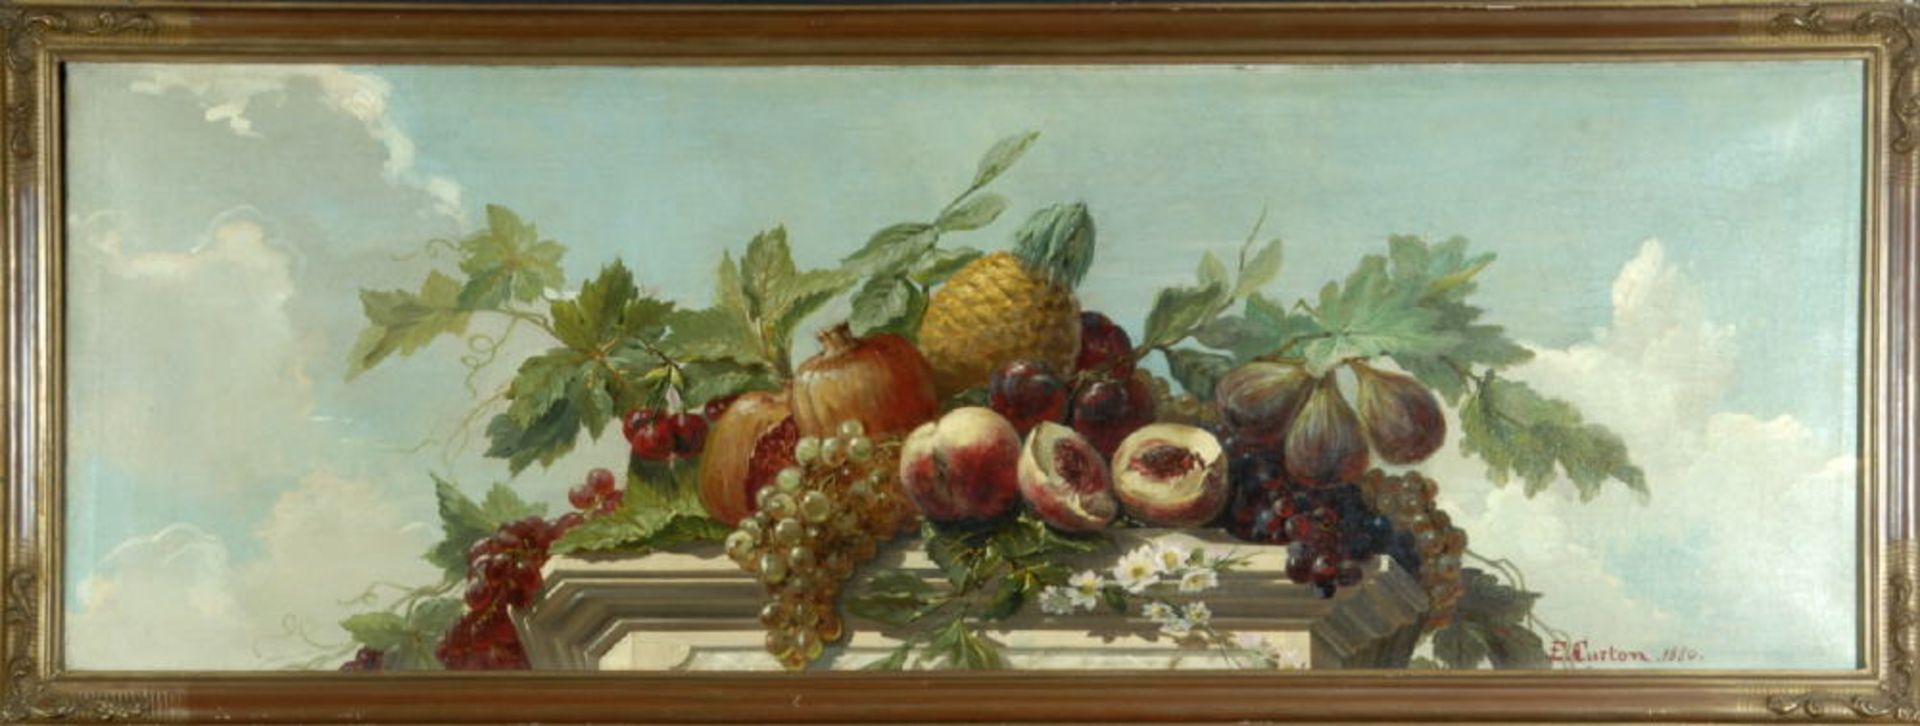 Curton, E., Künstler des 19. Jh.Öl/Lwd, 46 x 134 cm, " Supraporte mit exotischen Früchten auf